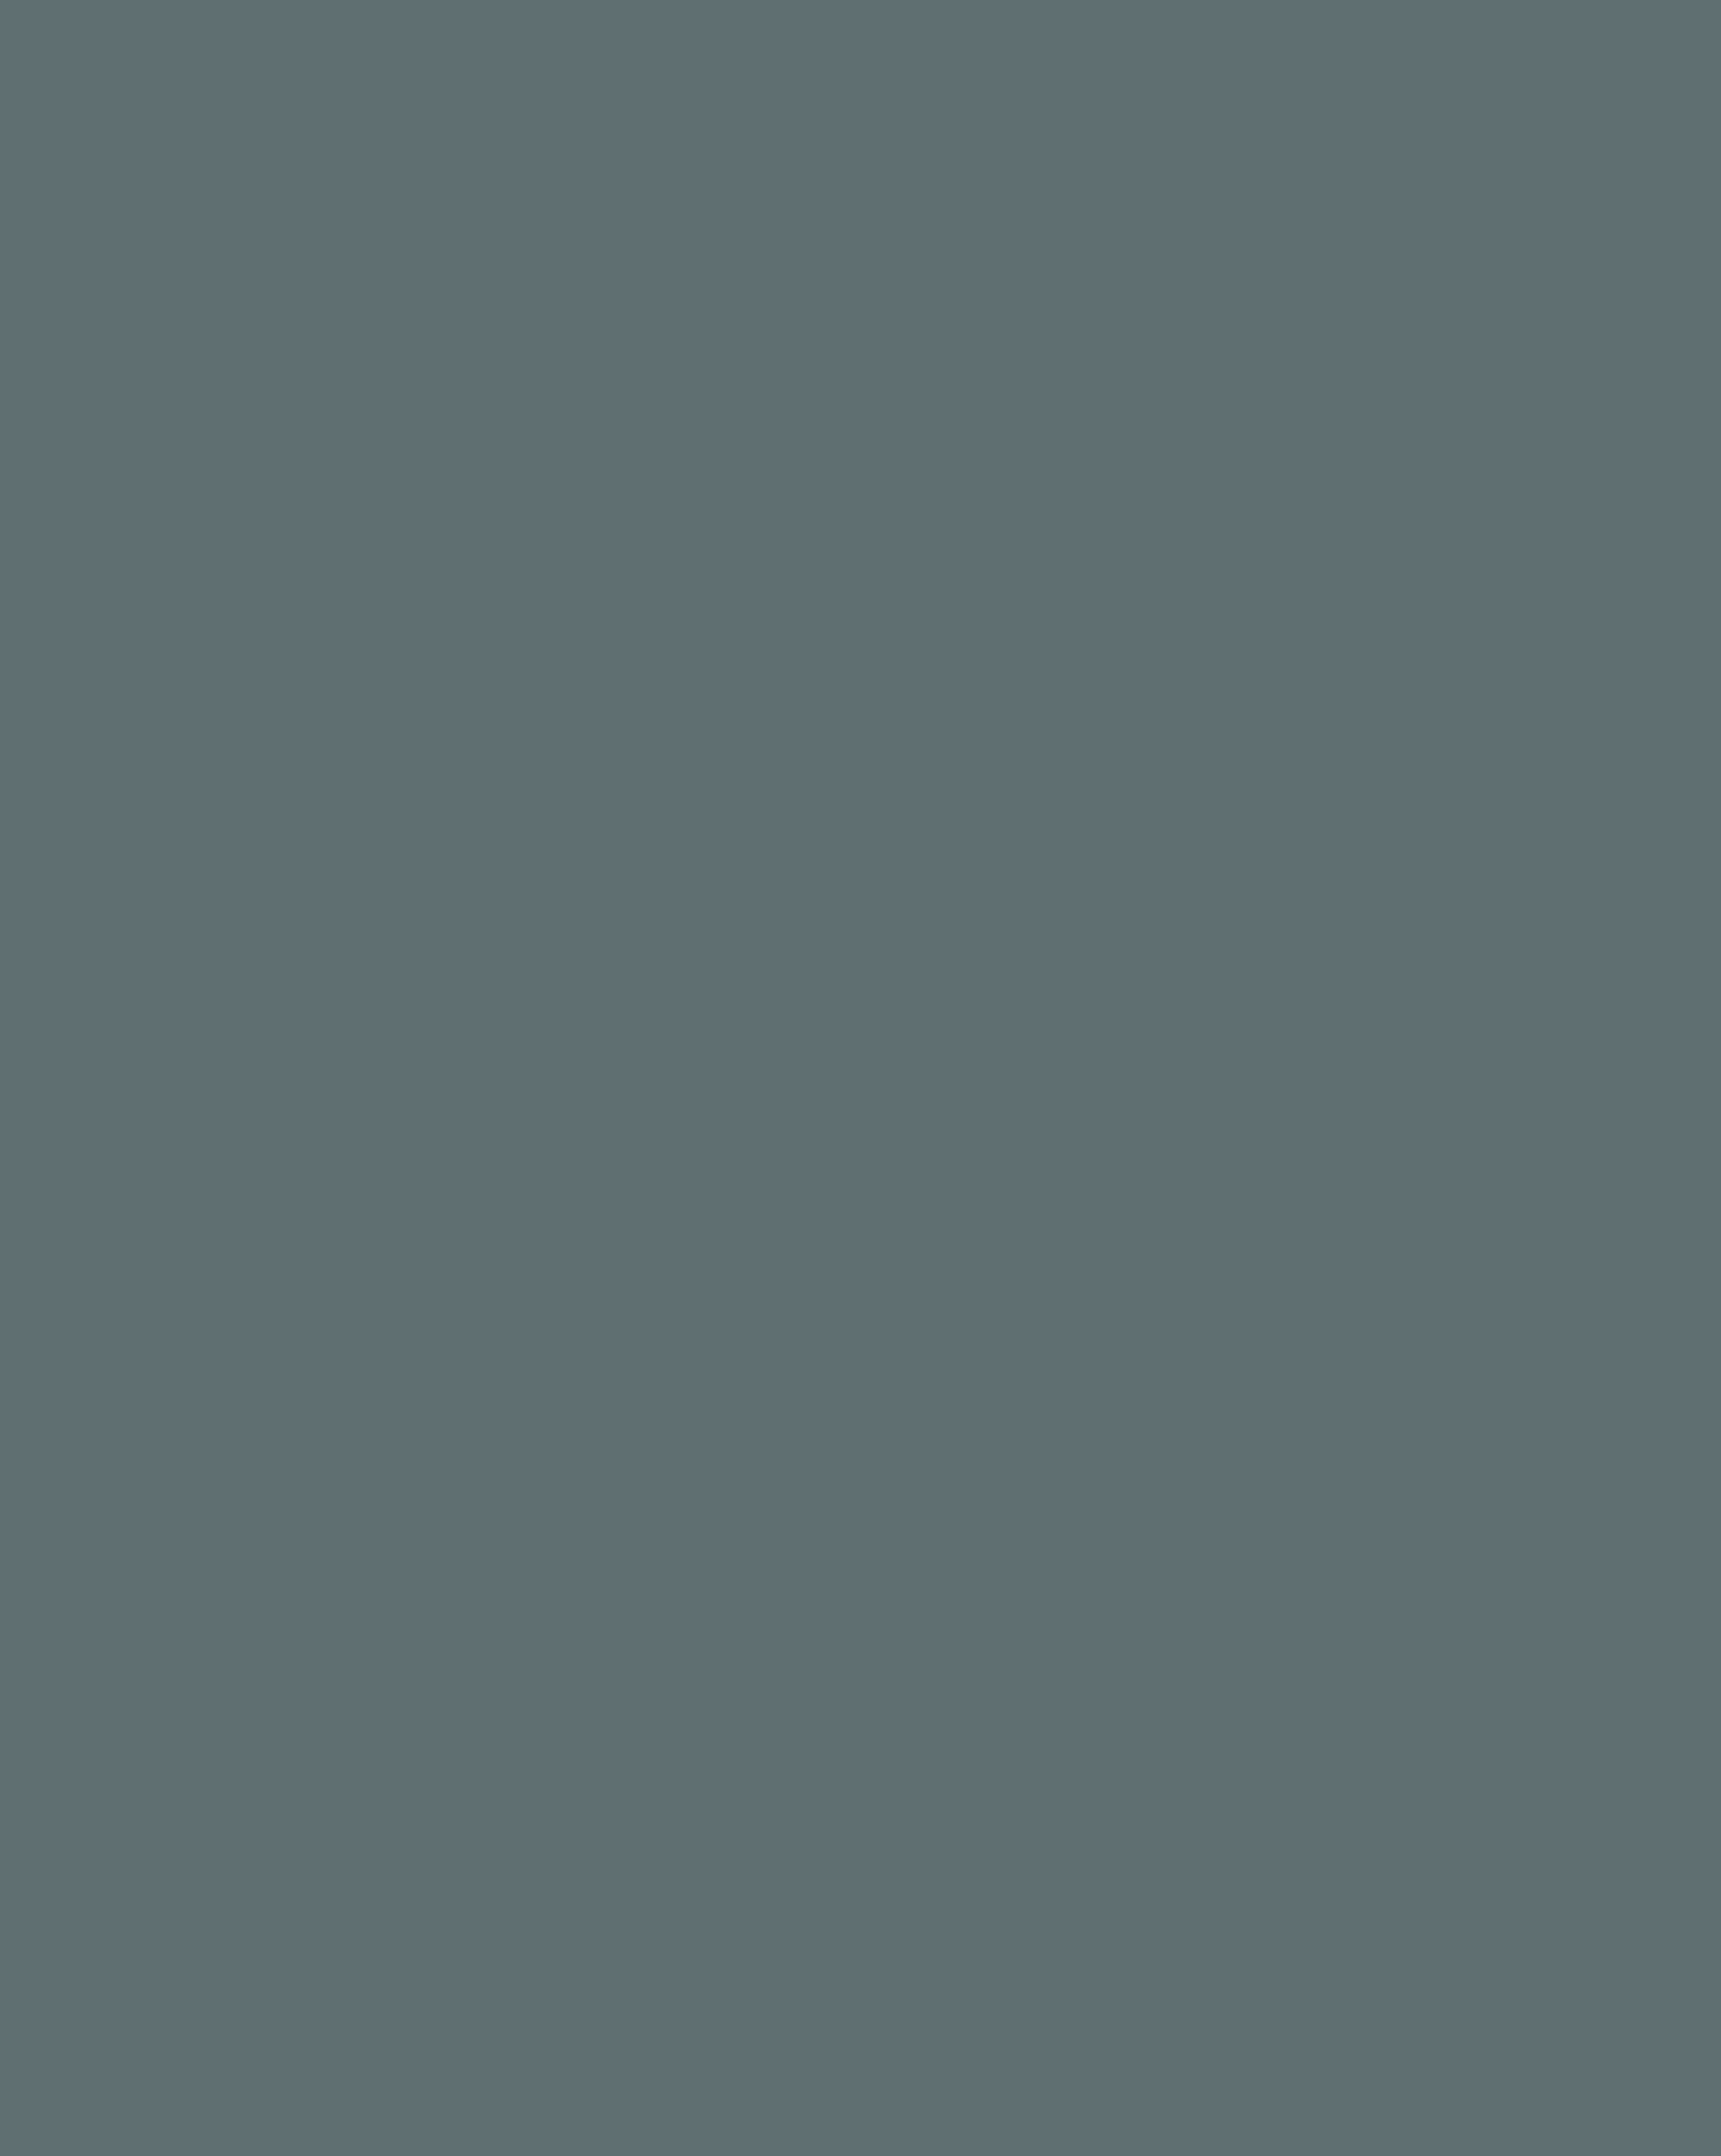 Виктор Борисов-Мусатов. Девушка с агавой (фрагмент). 1897. Государственная Третьяковская галерея, Москва